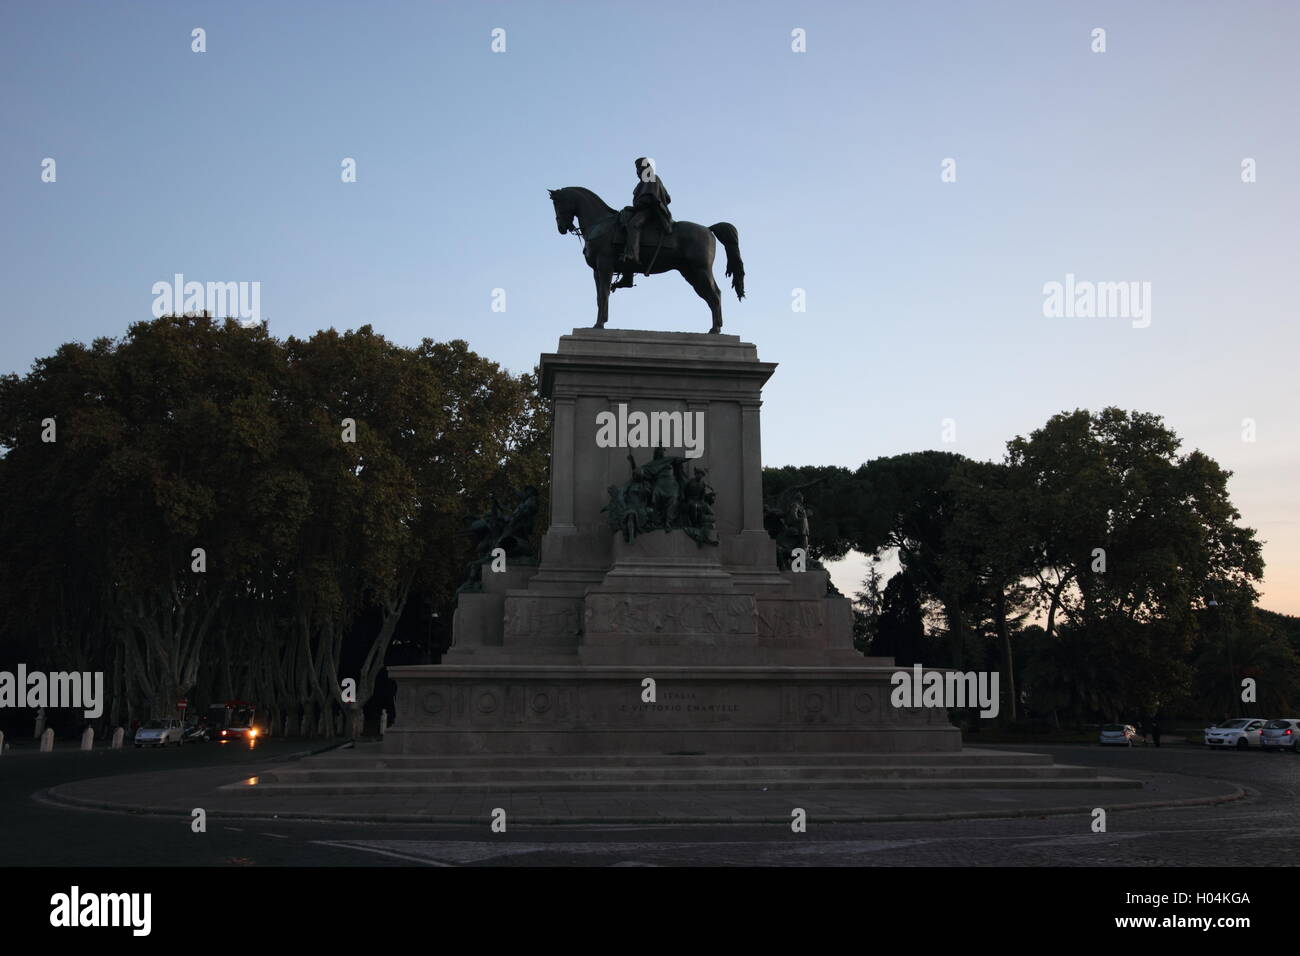 Monumento equestre al Gianicolo dedicata a Giuseppe Garibaldi, Roma, Italia Foto Stock